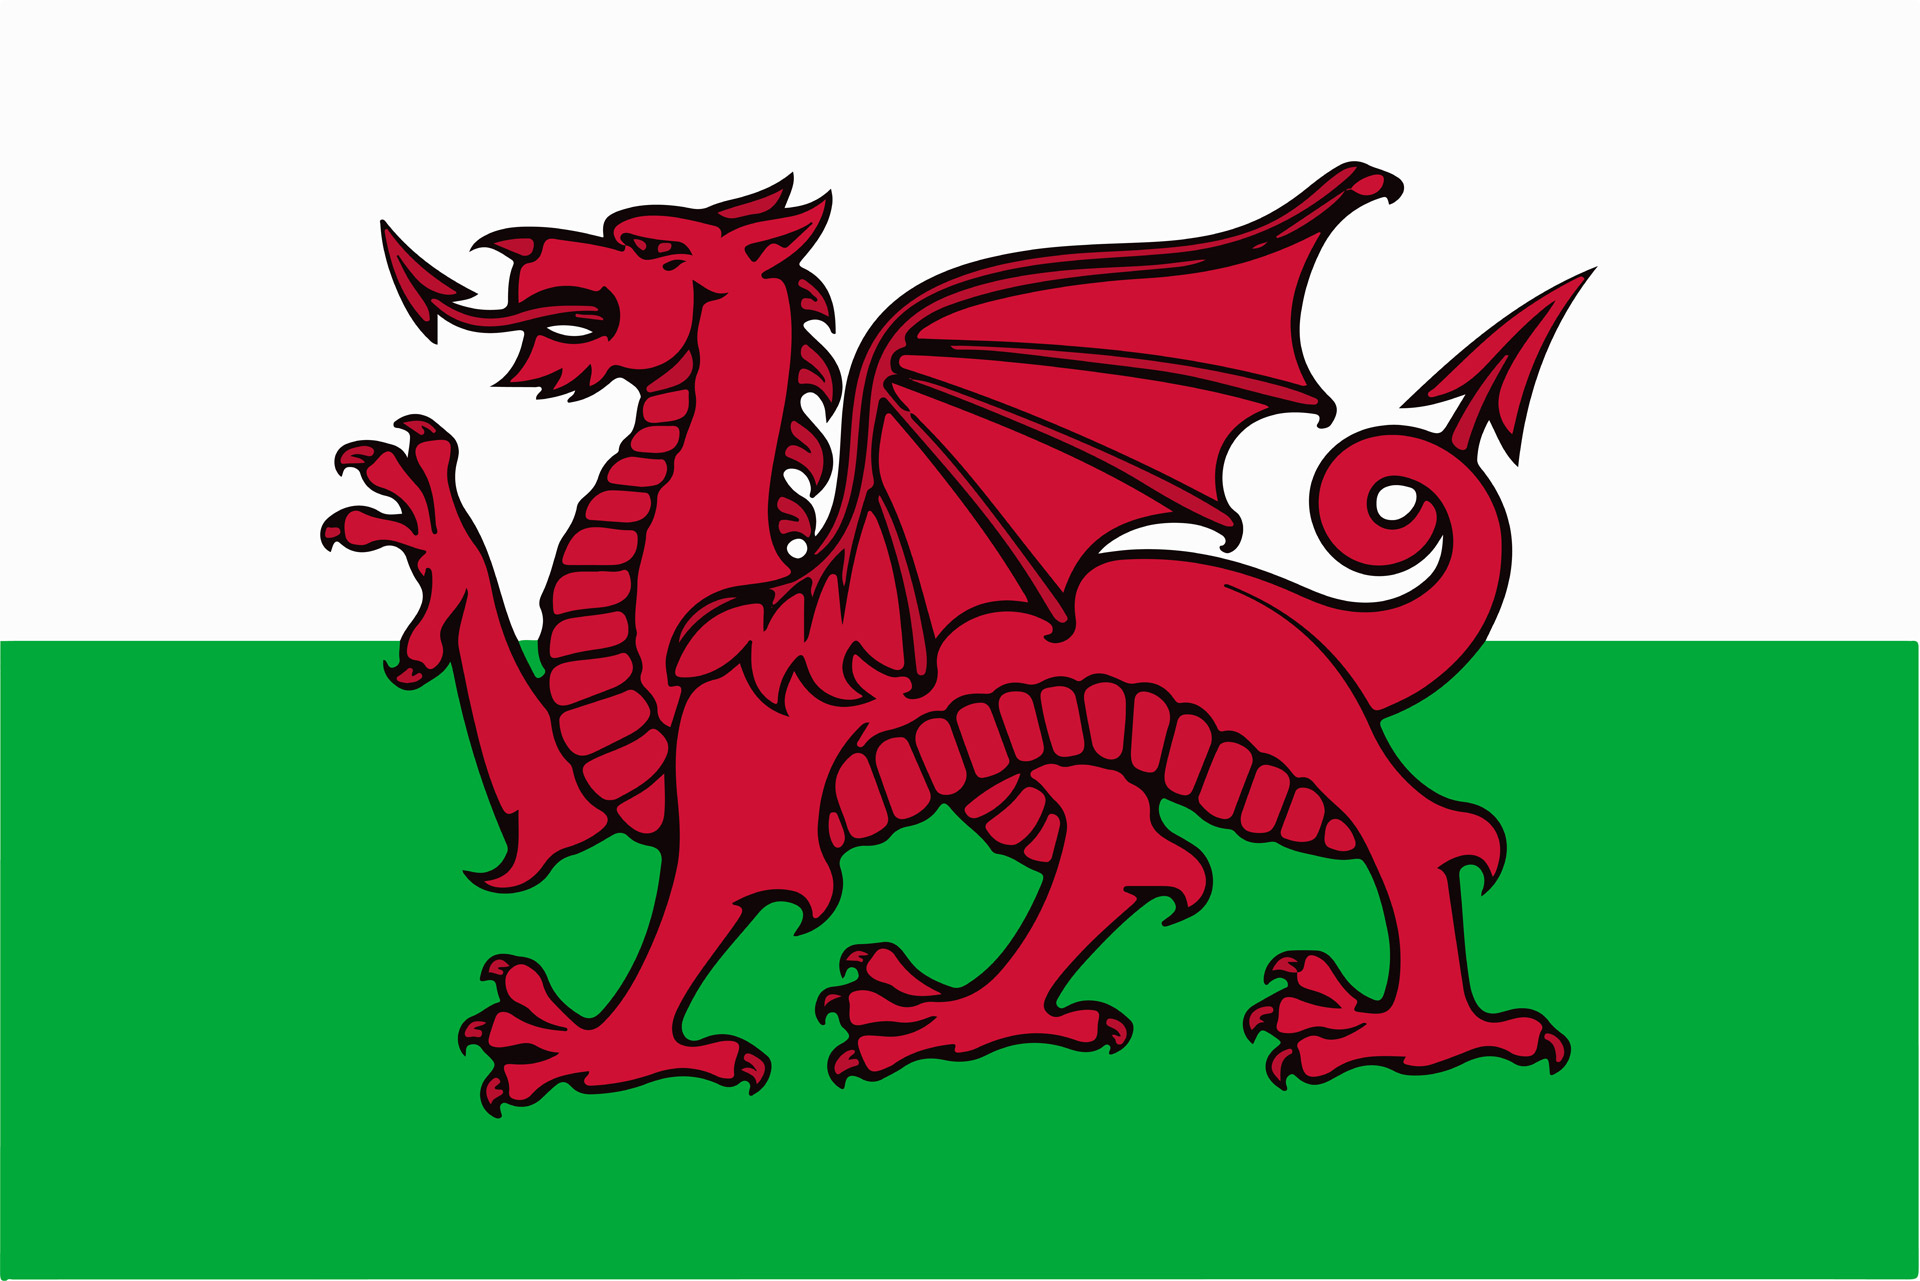 Climate Coaching Alliance Wales / Cynghrair Hyfforddi ar faterion Hinsawdd Cymru